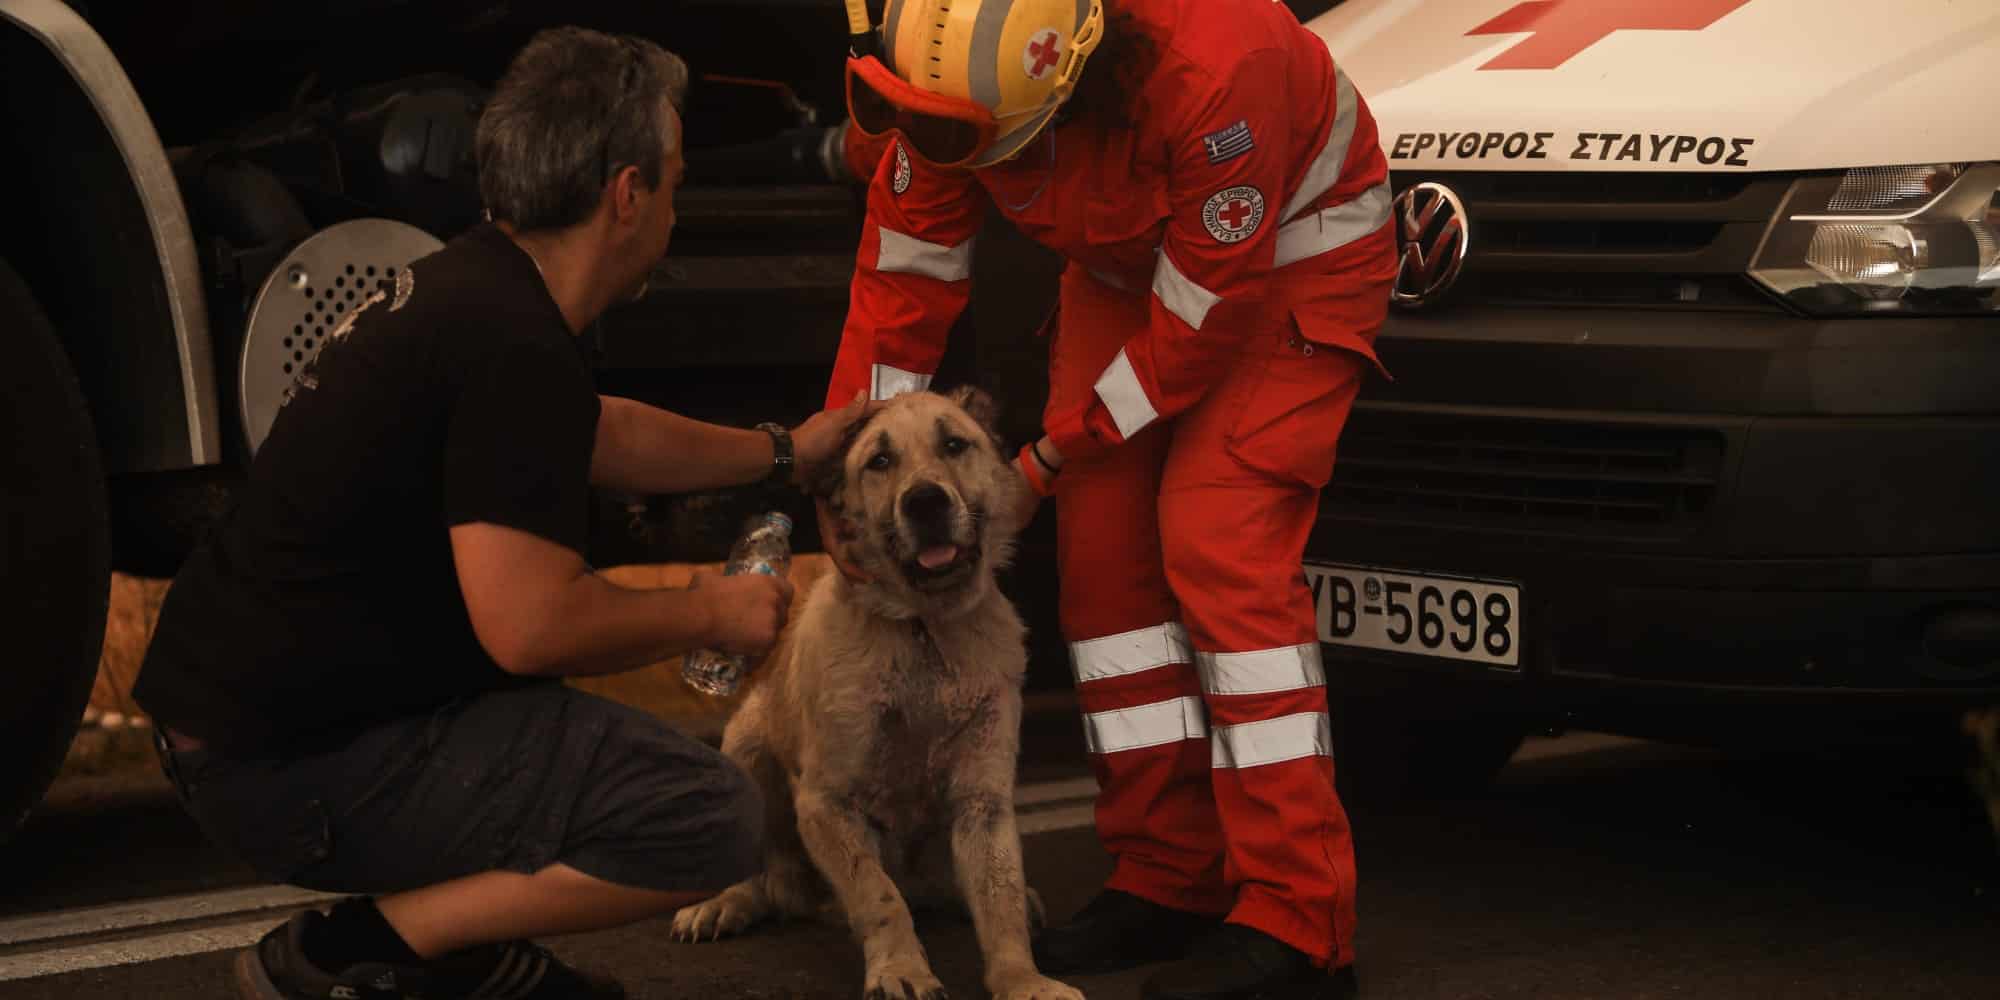 Διασώστες έσωσαν σκύλο από πυρκαγιά